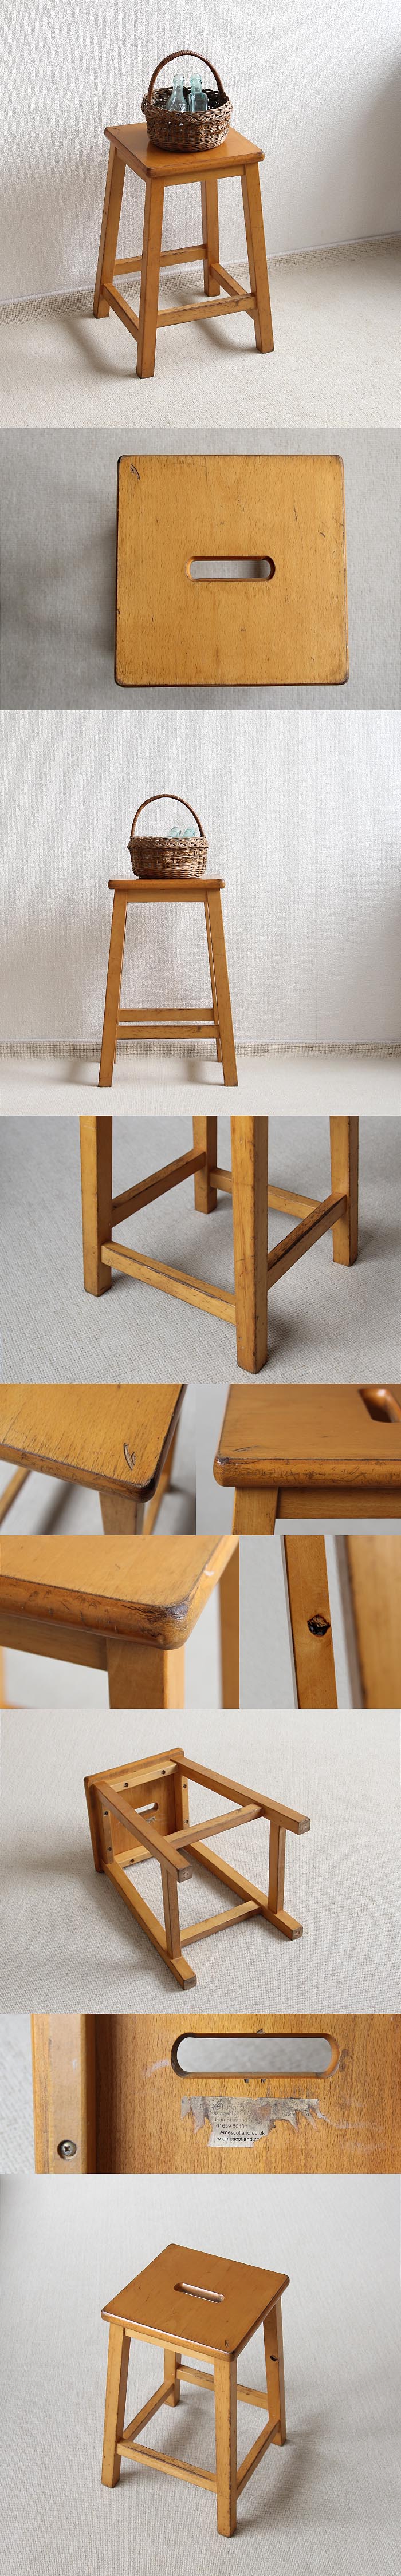 スコットランド ヴィンテージスタイル スクール スツール 木製 イギリス 学校椅子 家具「eme furniture」P-376